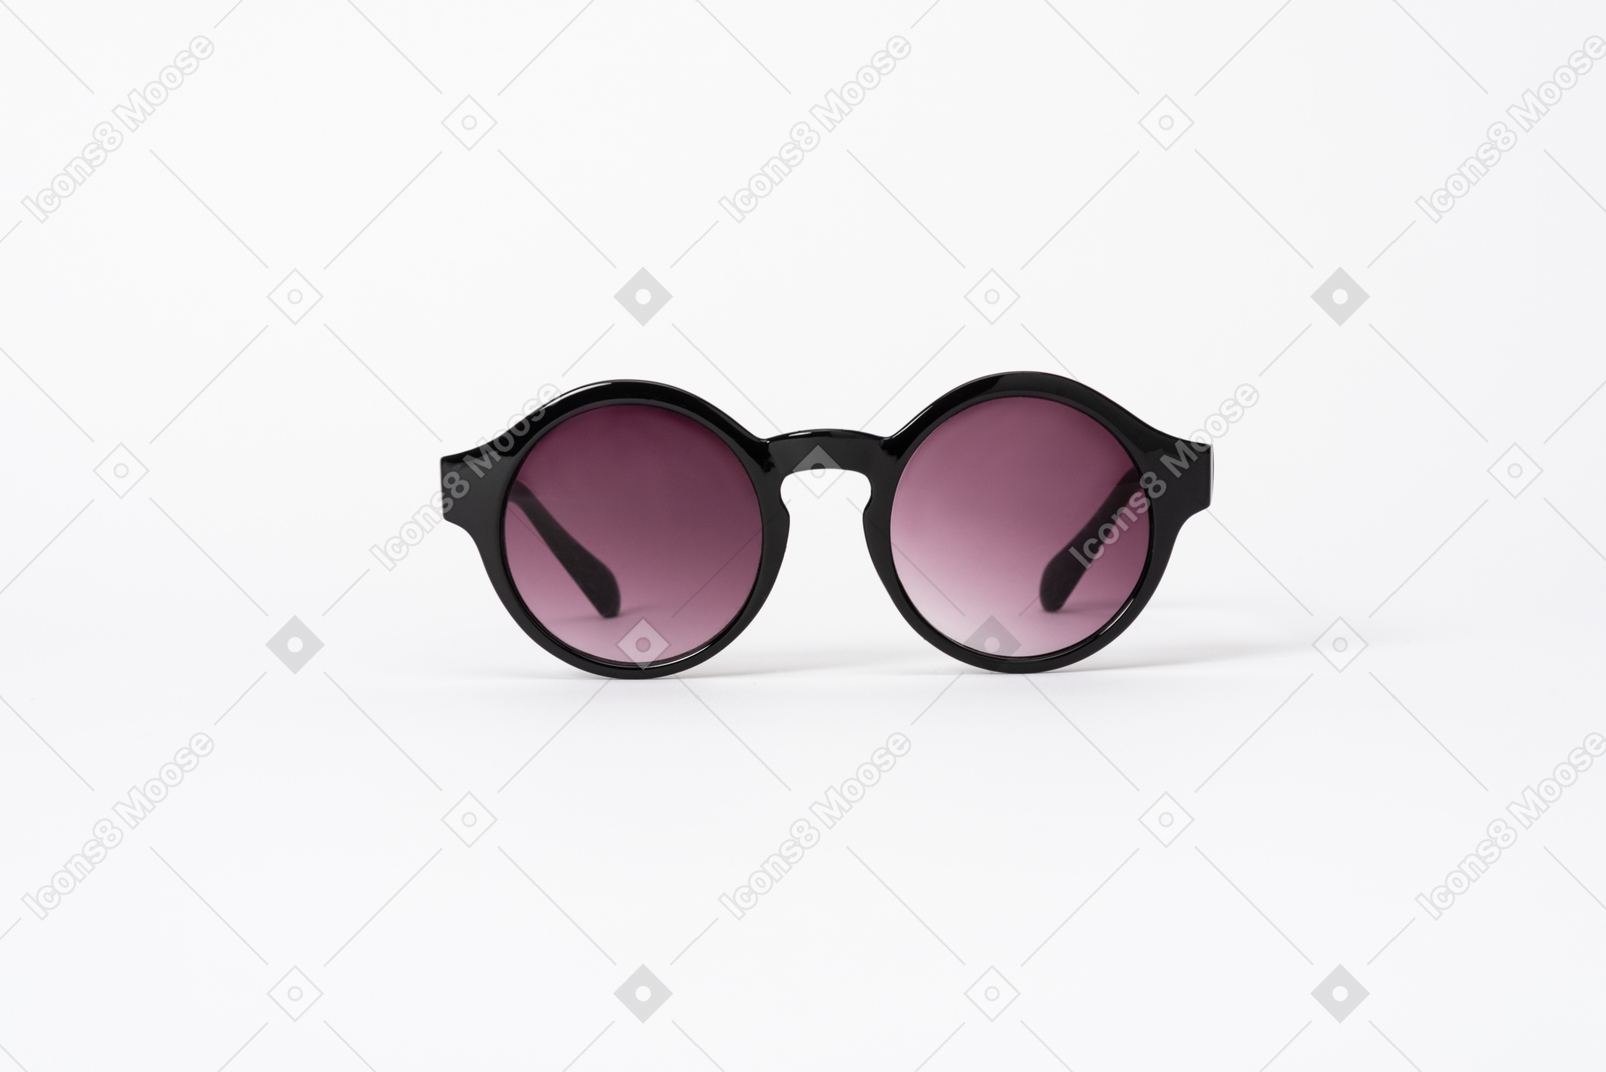 Un paio di occhiali da sole a forma di tondo